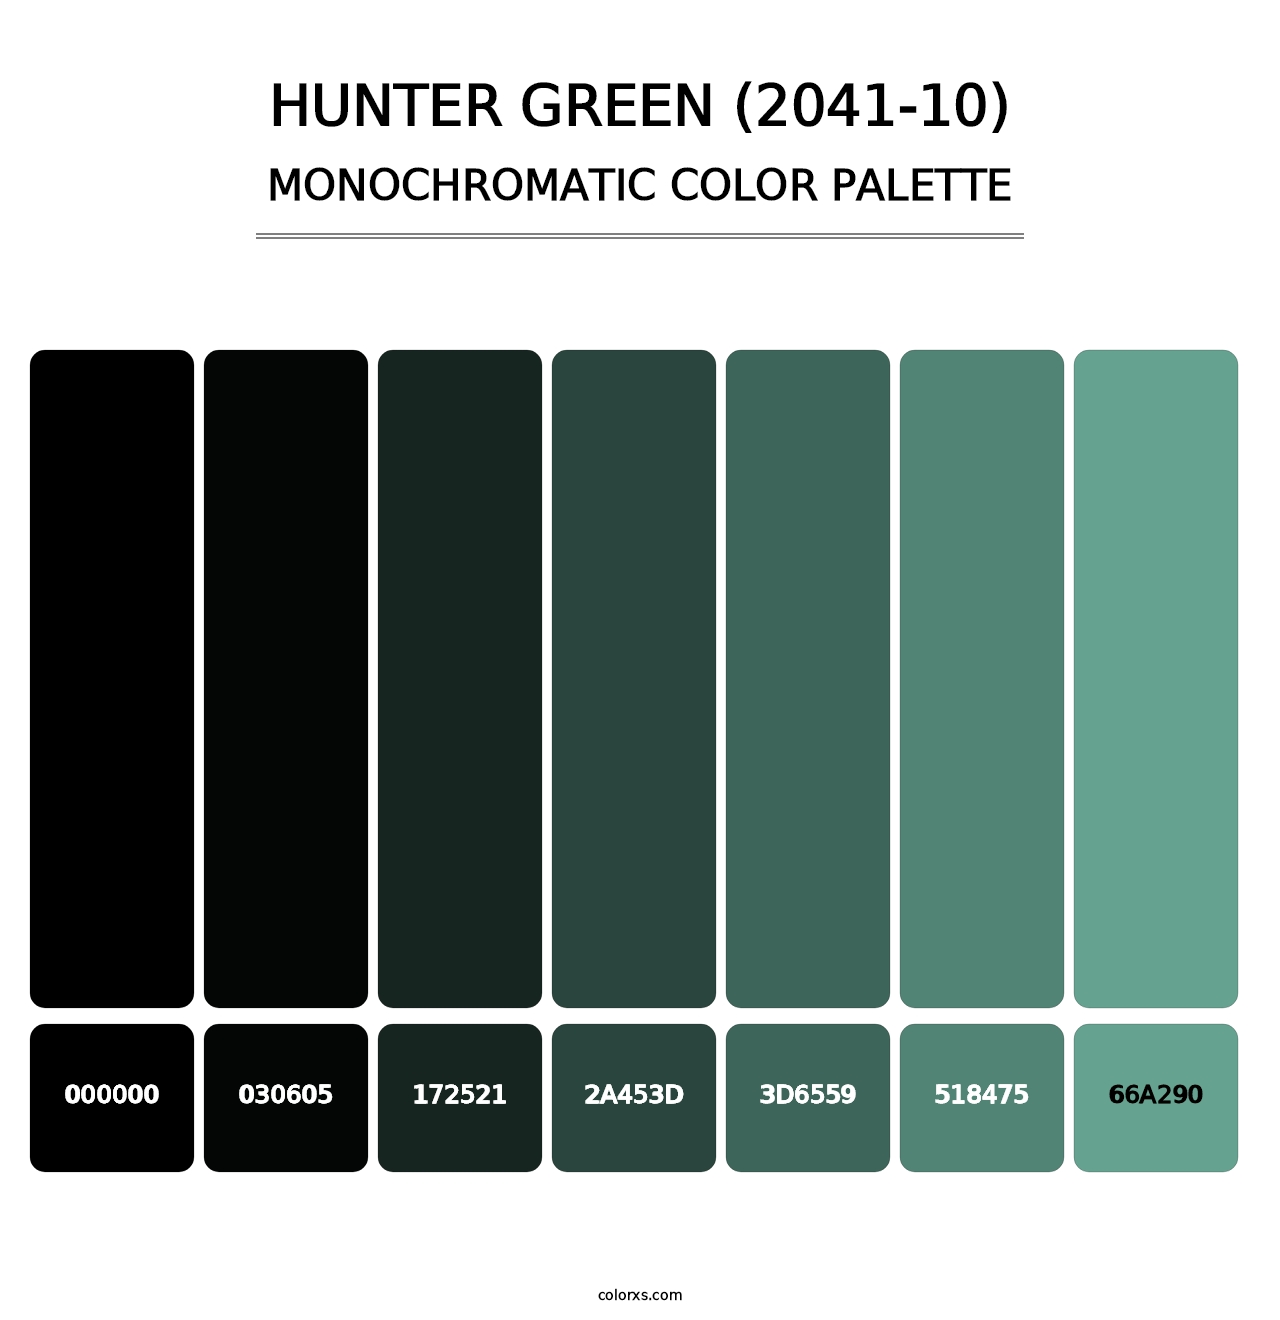 Hunter Green (2041-10) - Monochromatic Color Palette